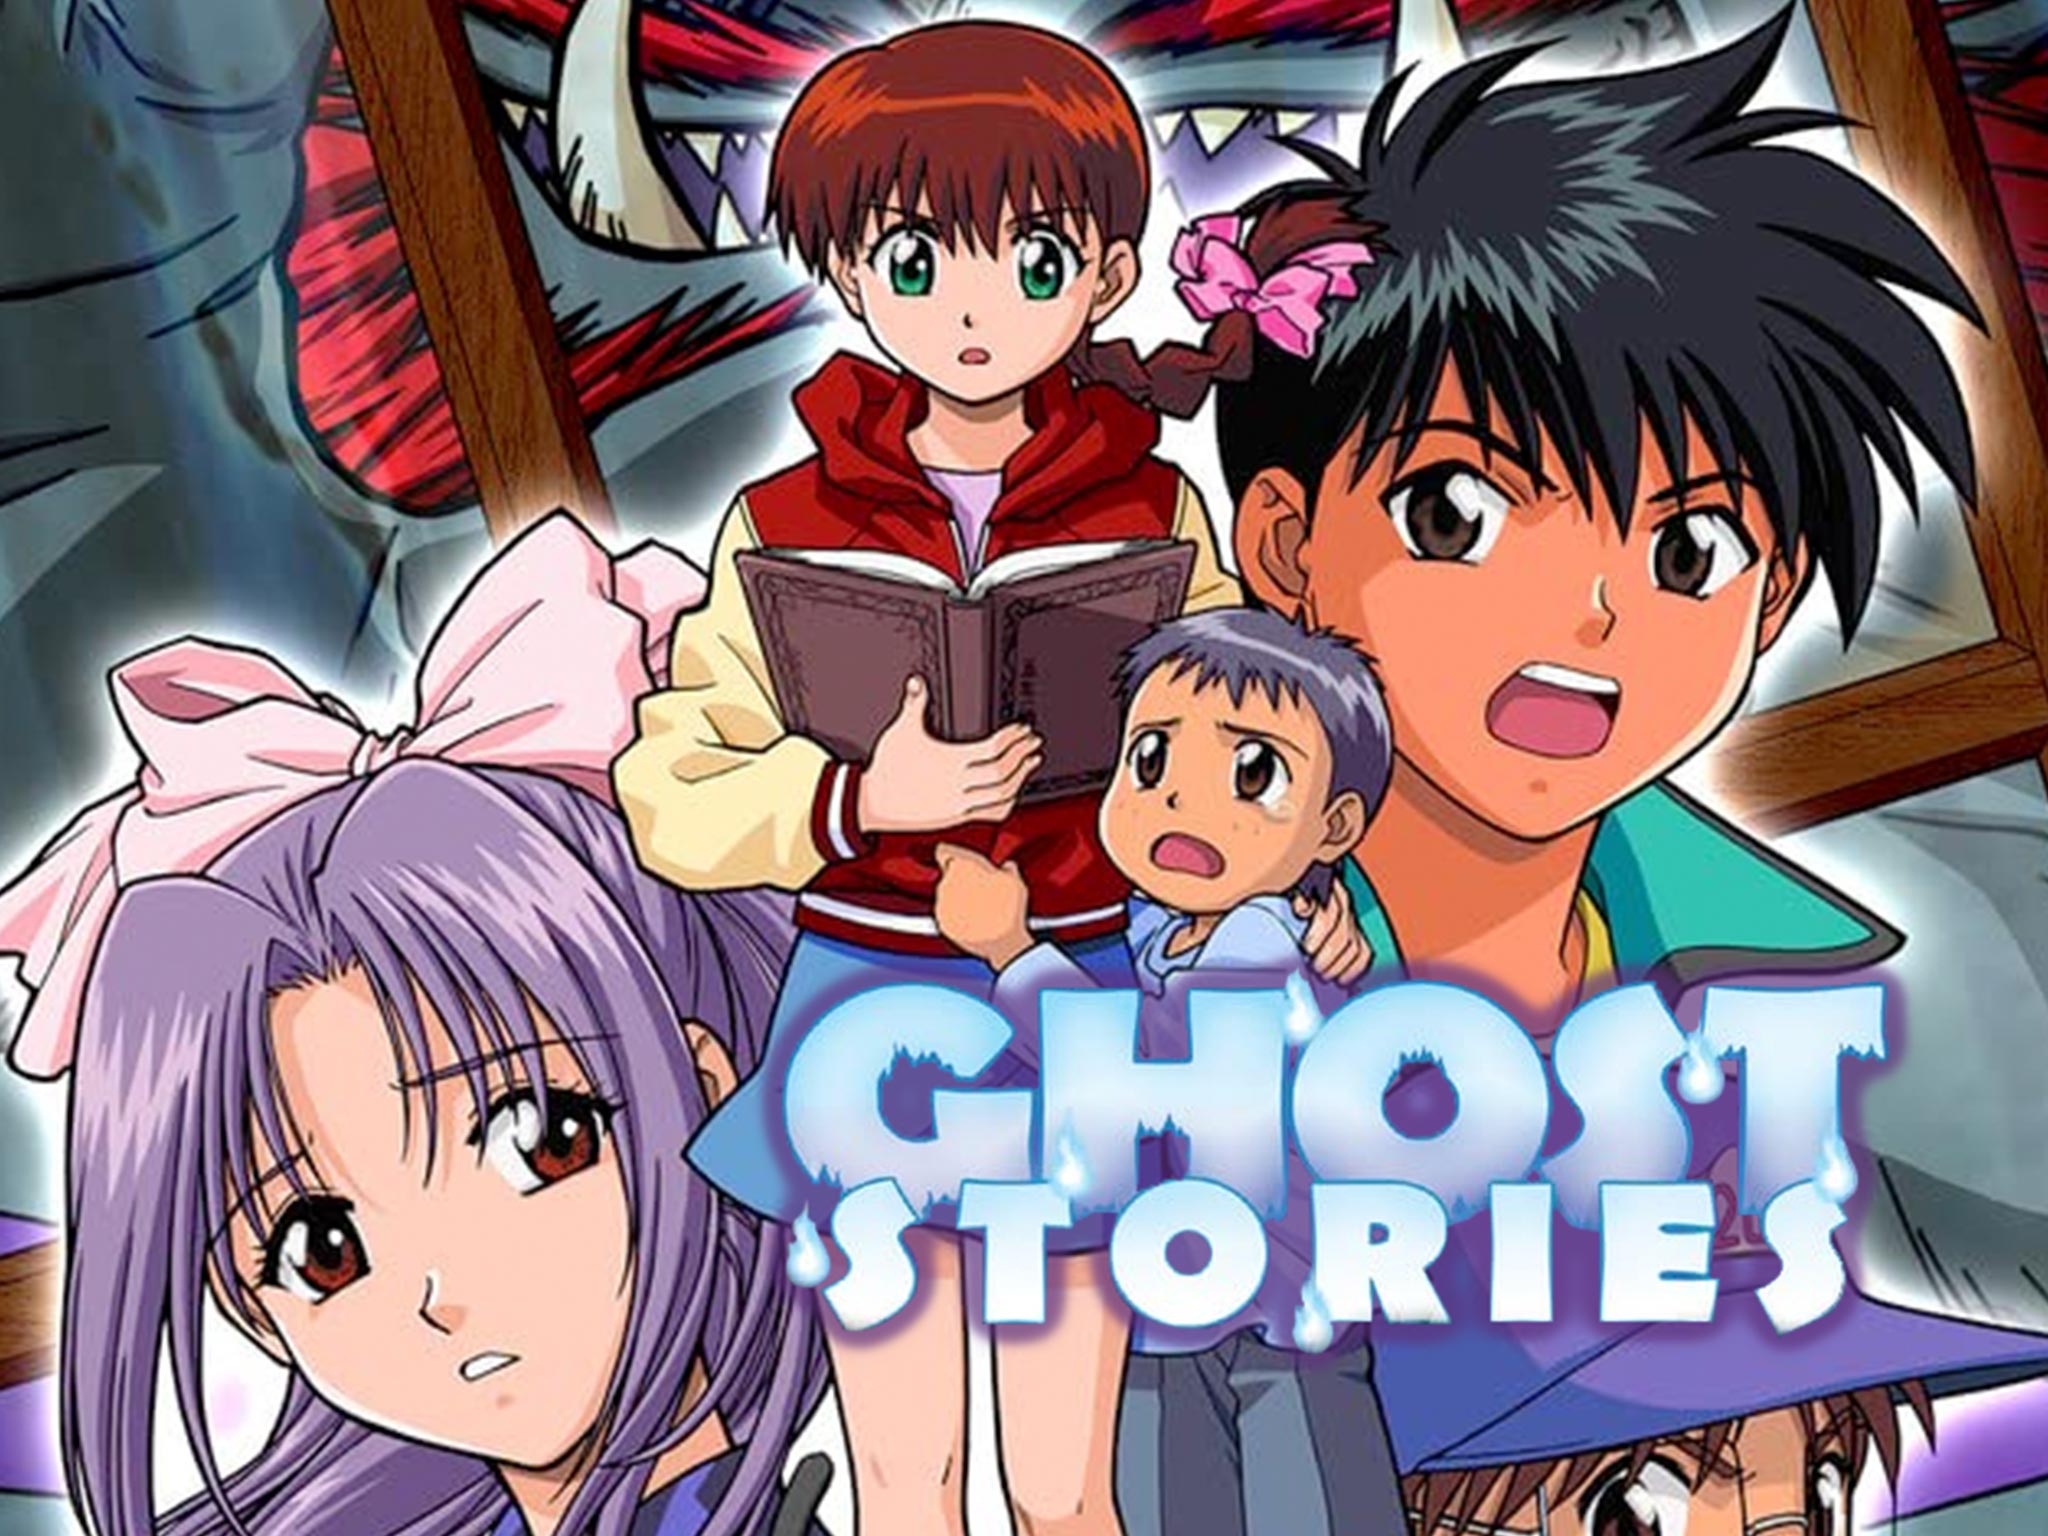 Ghost Stories  Episode 1 Tonight the Spirits Will Be Resurrected  Amanojaku  RiffTrax